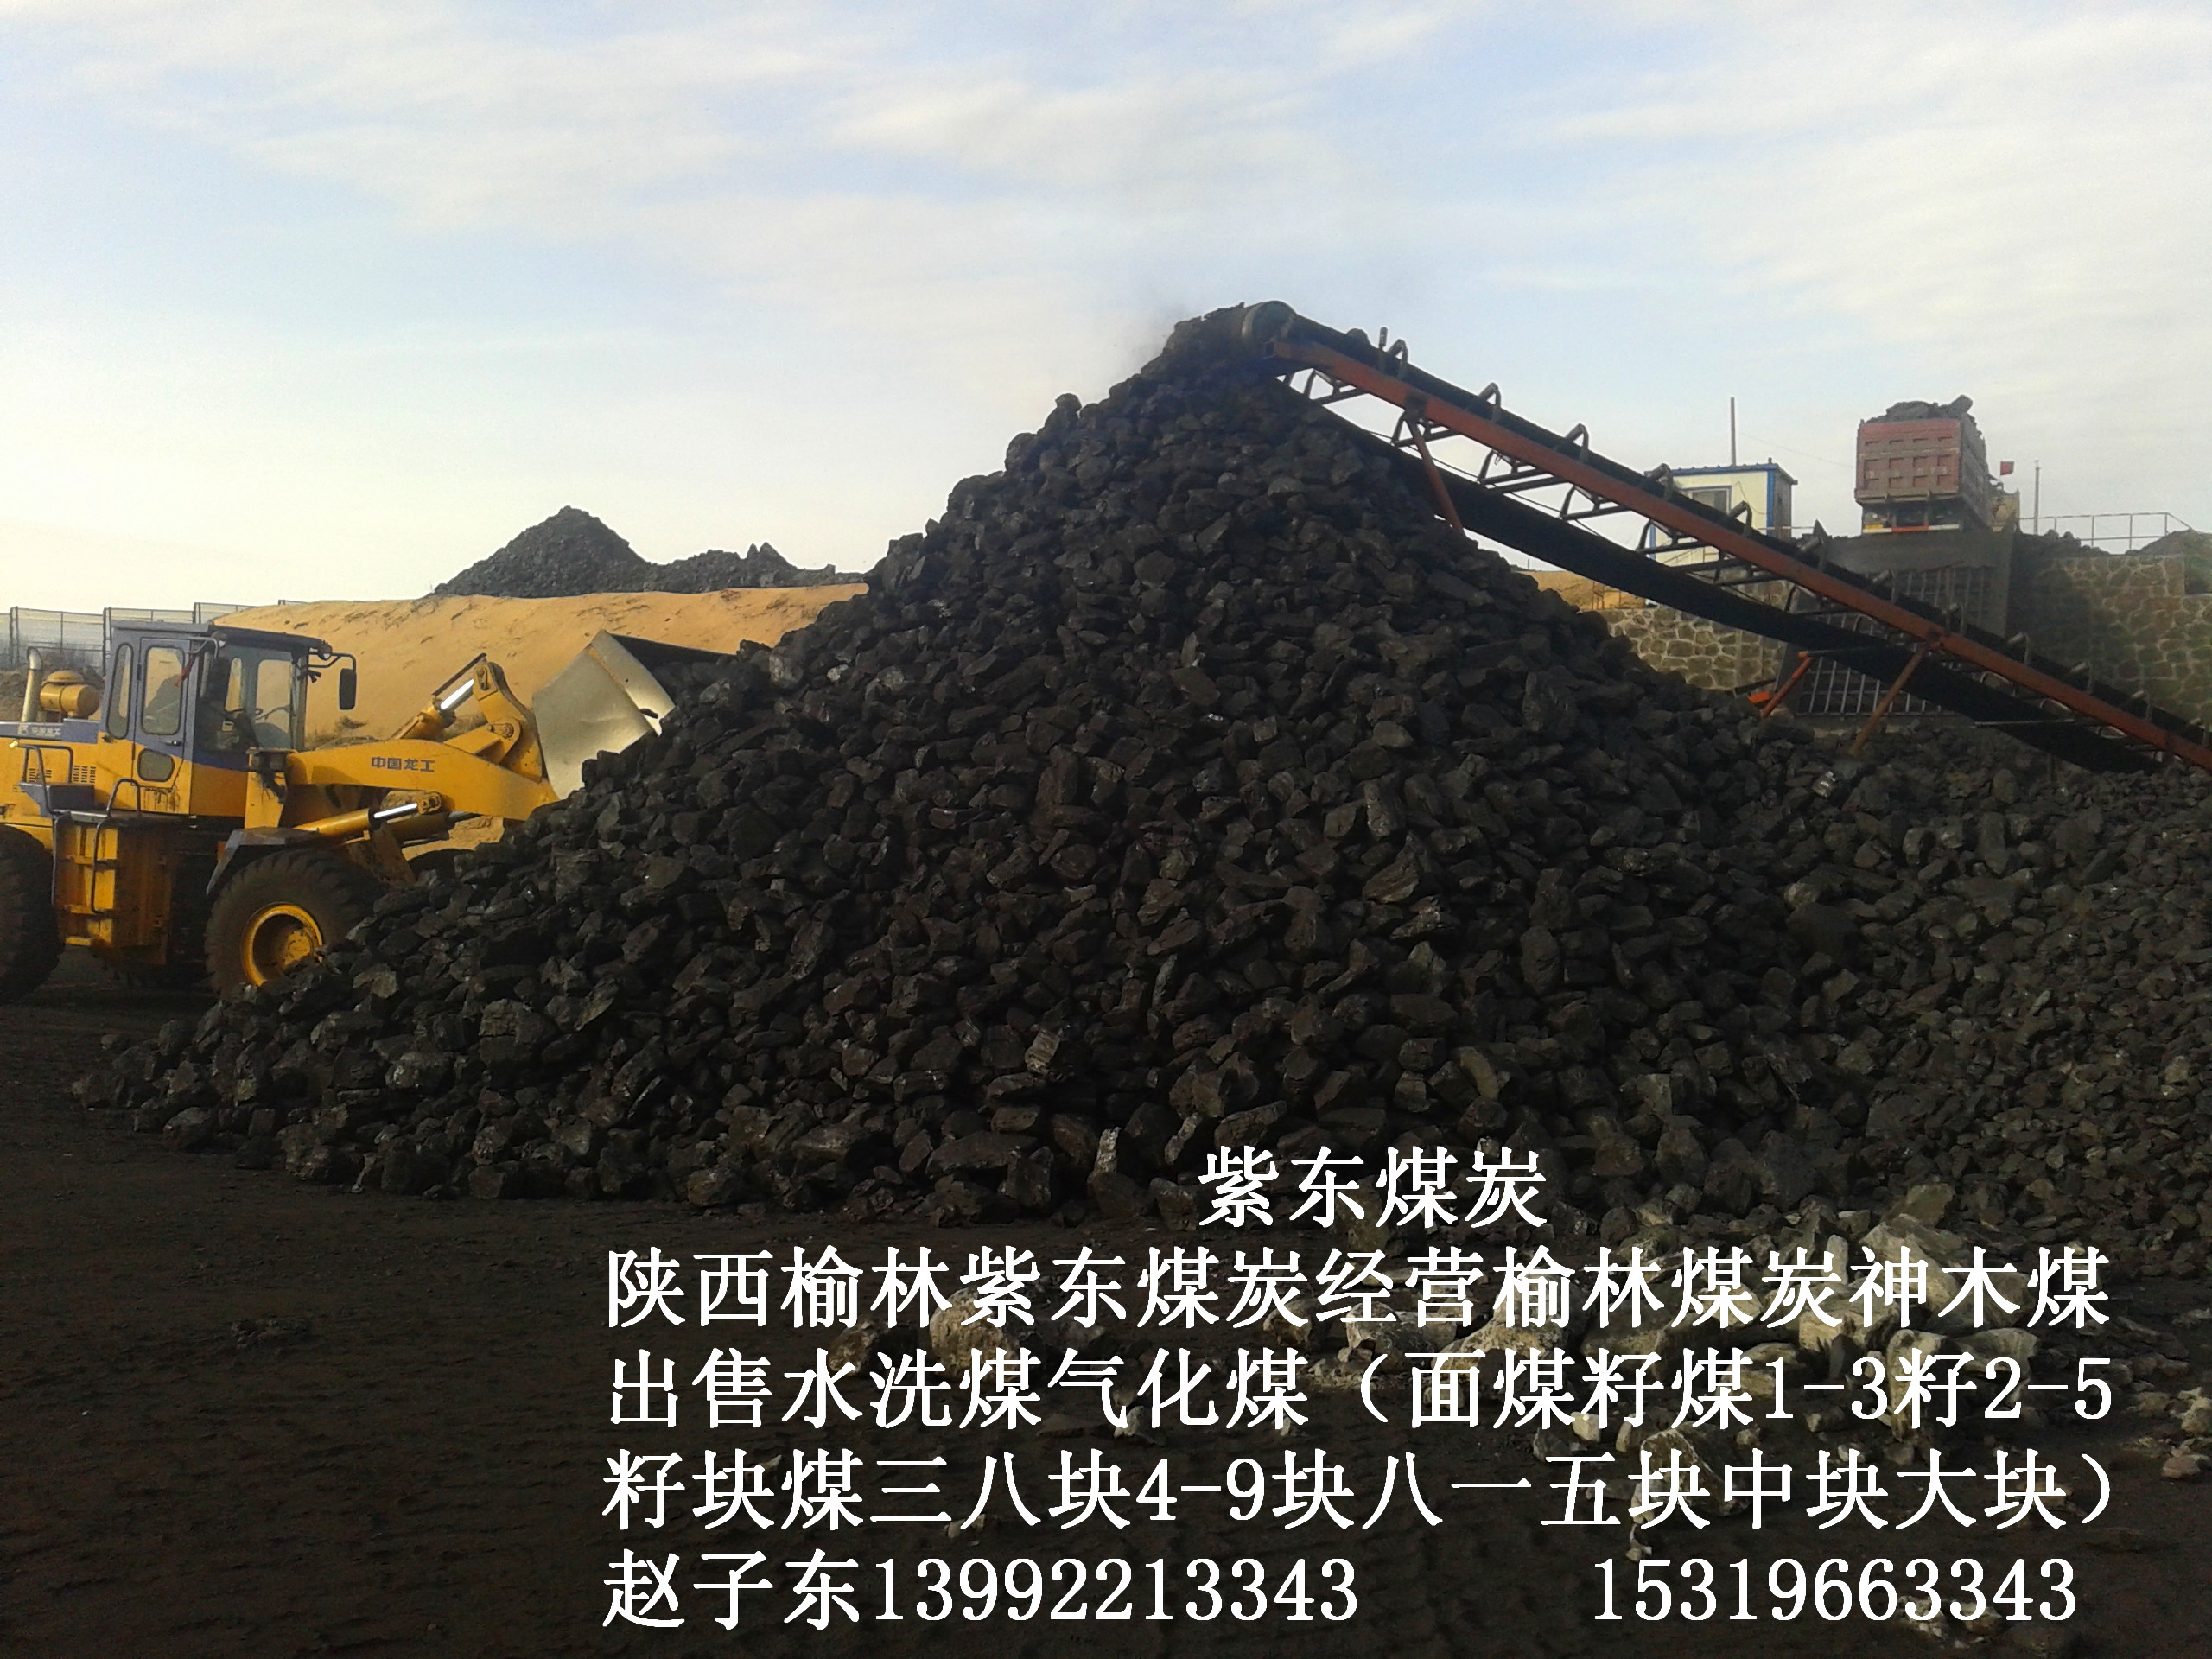 供应用于工业的末煤块煤混煤陕西出售沫煤籽煤块煤陕西榆林供应面煤籽煤块煤